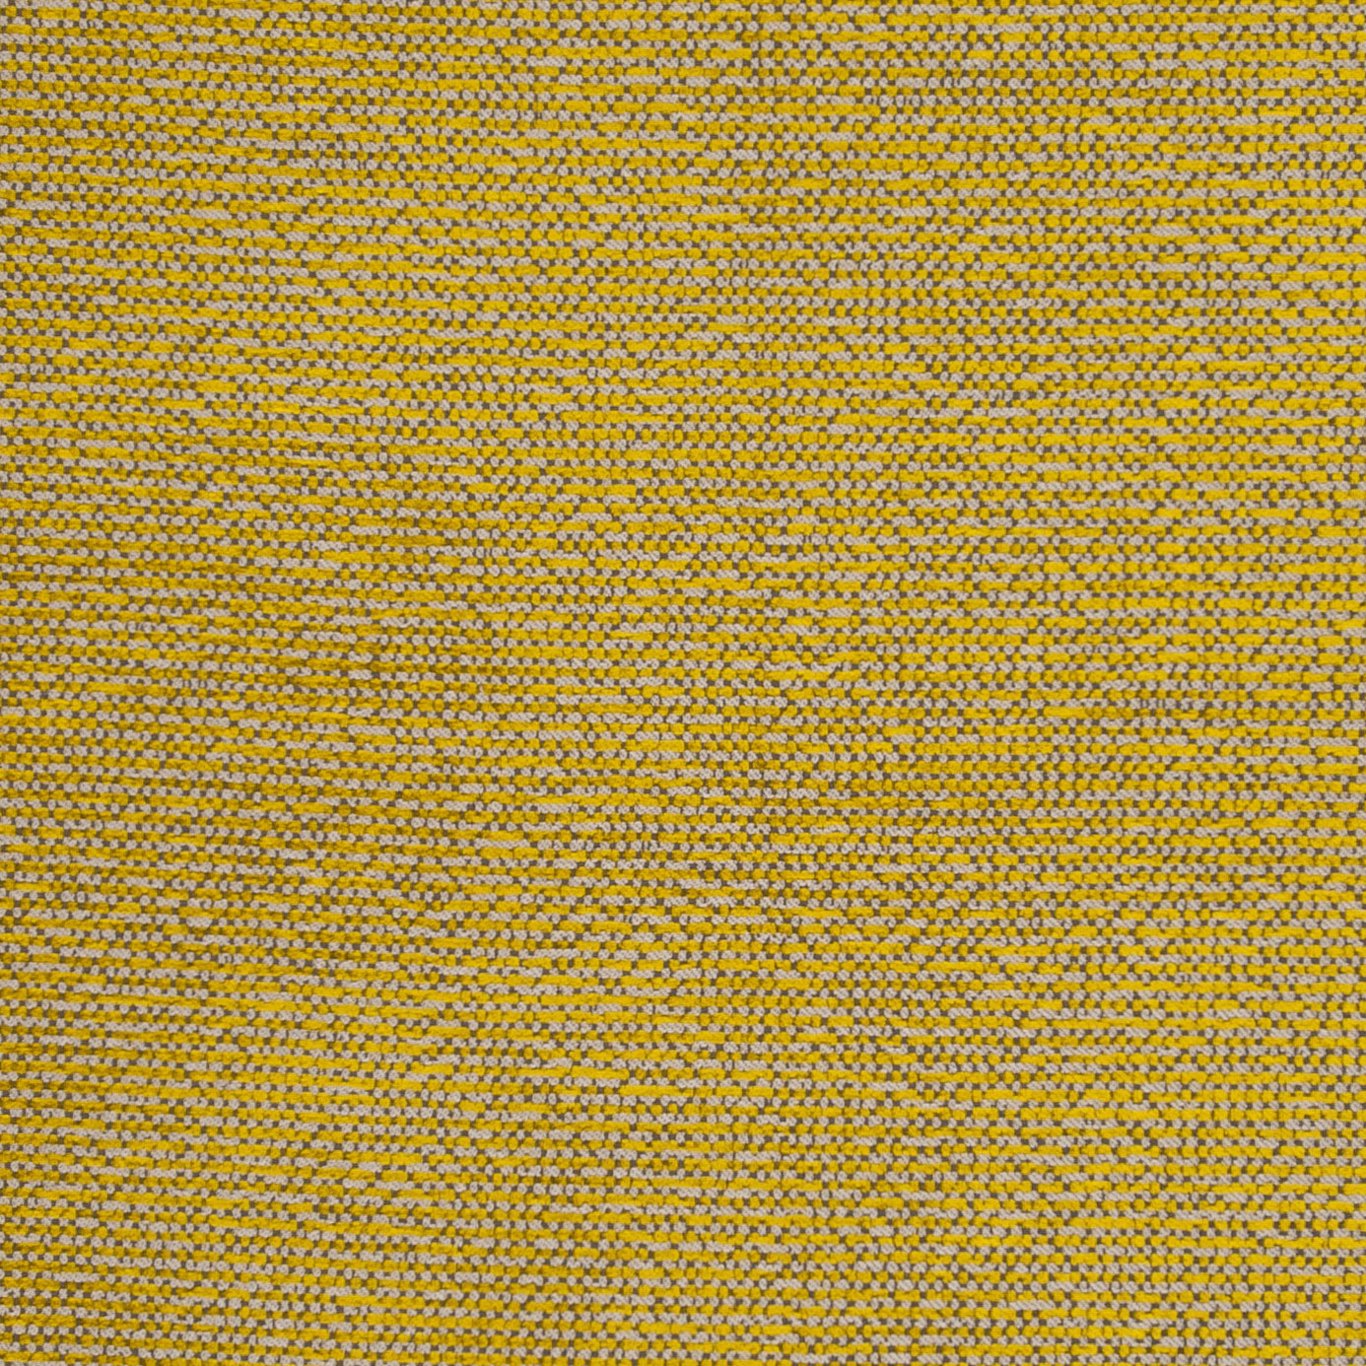 Beauvoir Citrus Fabric by CNC